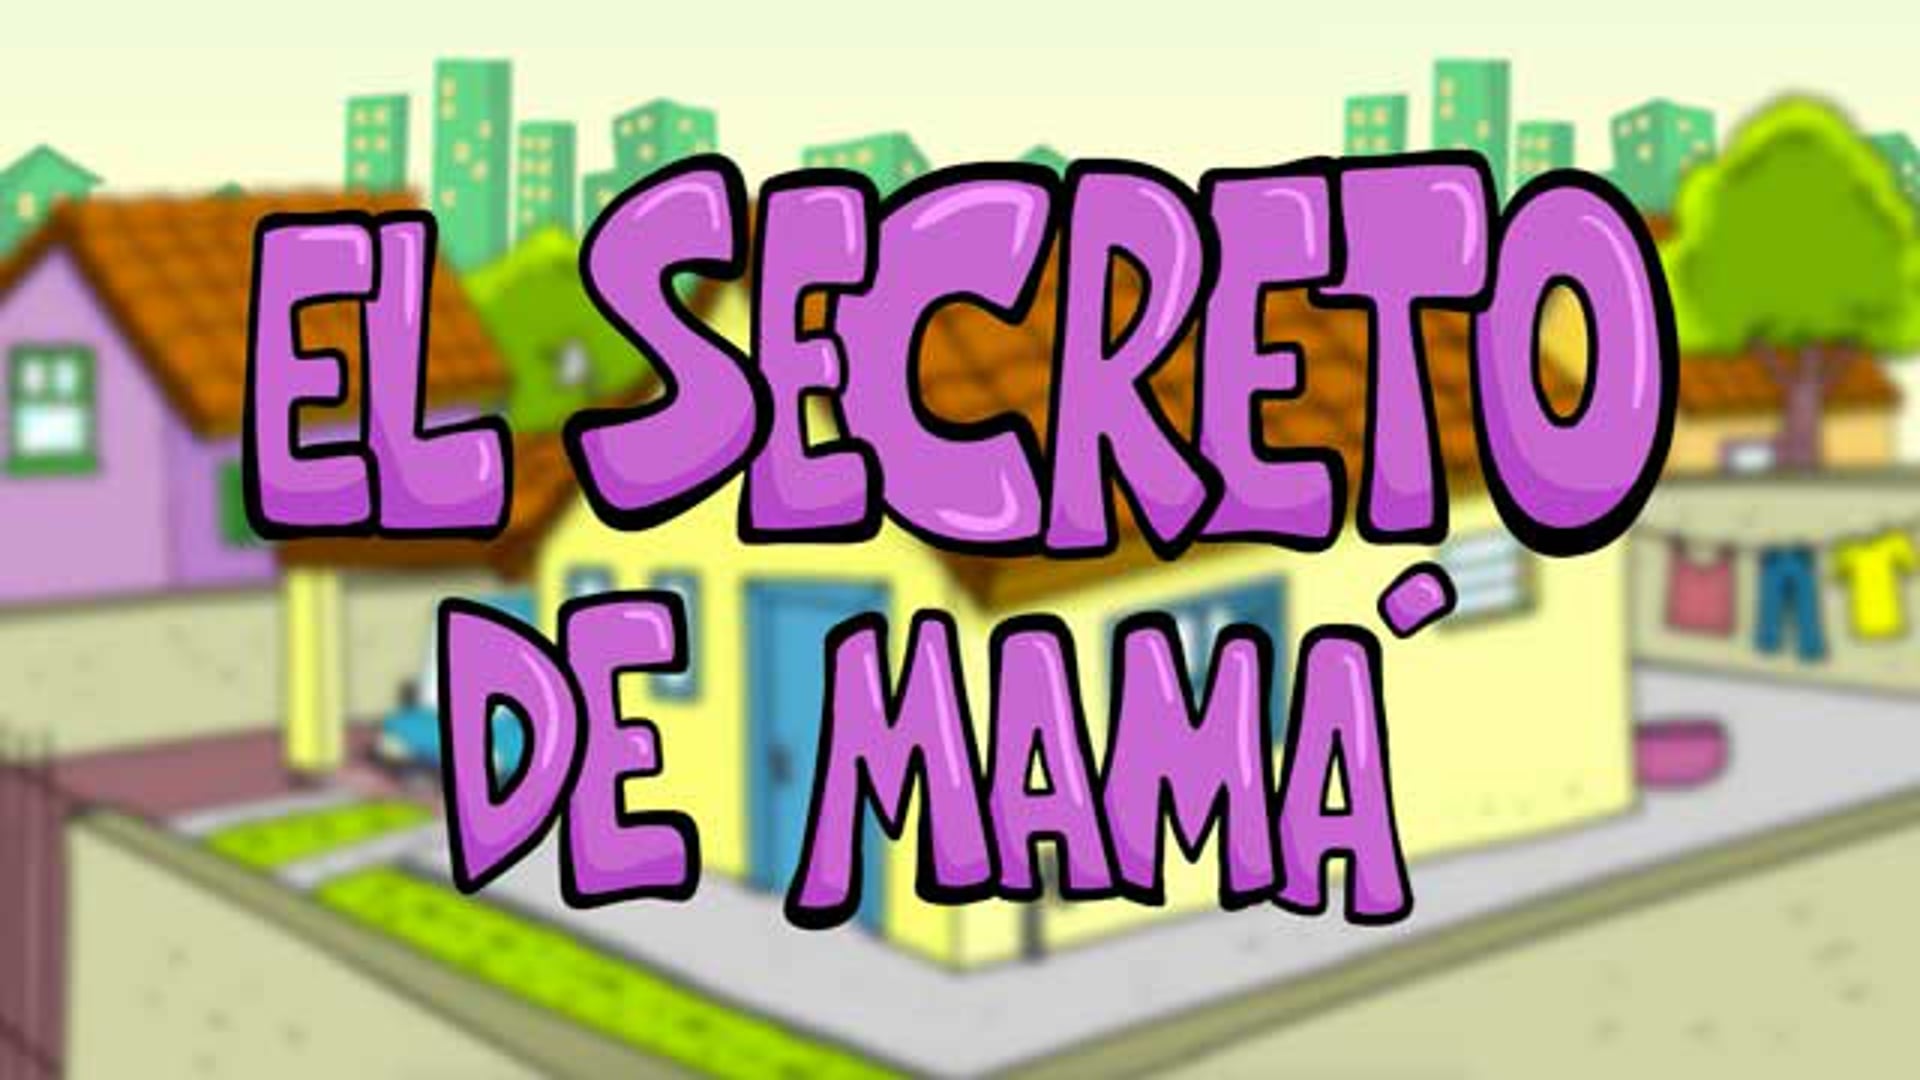 El secreto de mamá